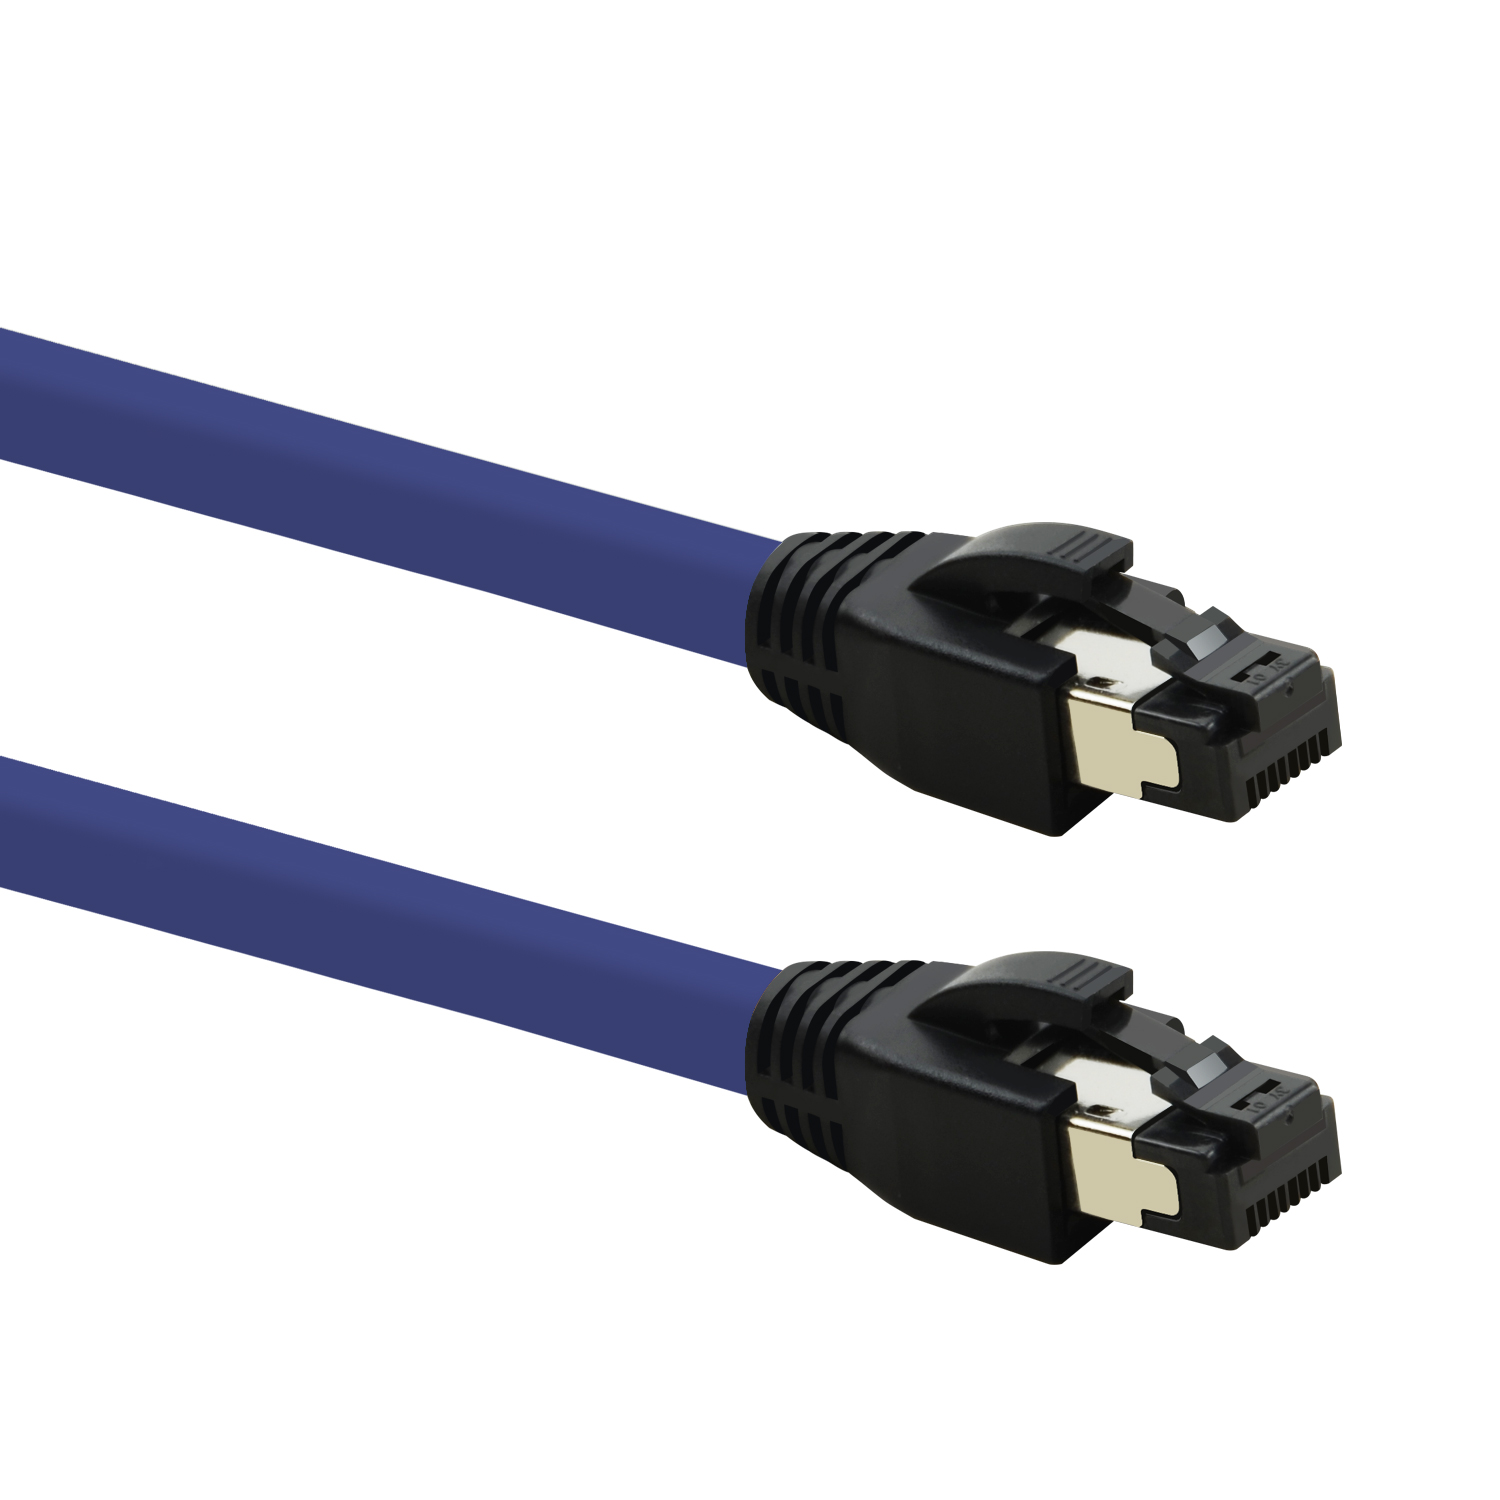 TPFNET 10er 40 Netzwerkkabel, Pack m S/FTP / 1,5 GBit, 1,5m Netzwerkkabel violett, Patchkabel